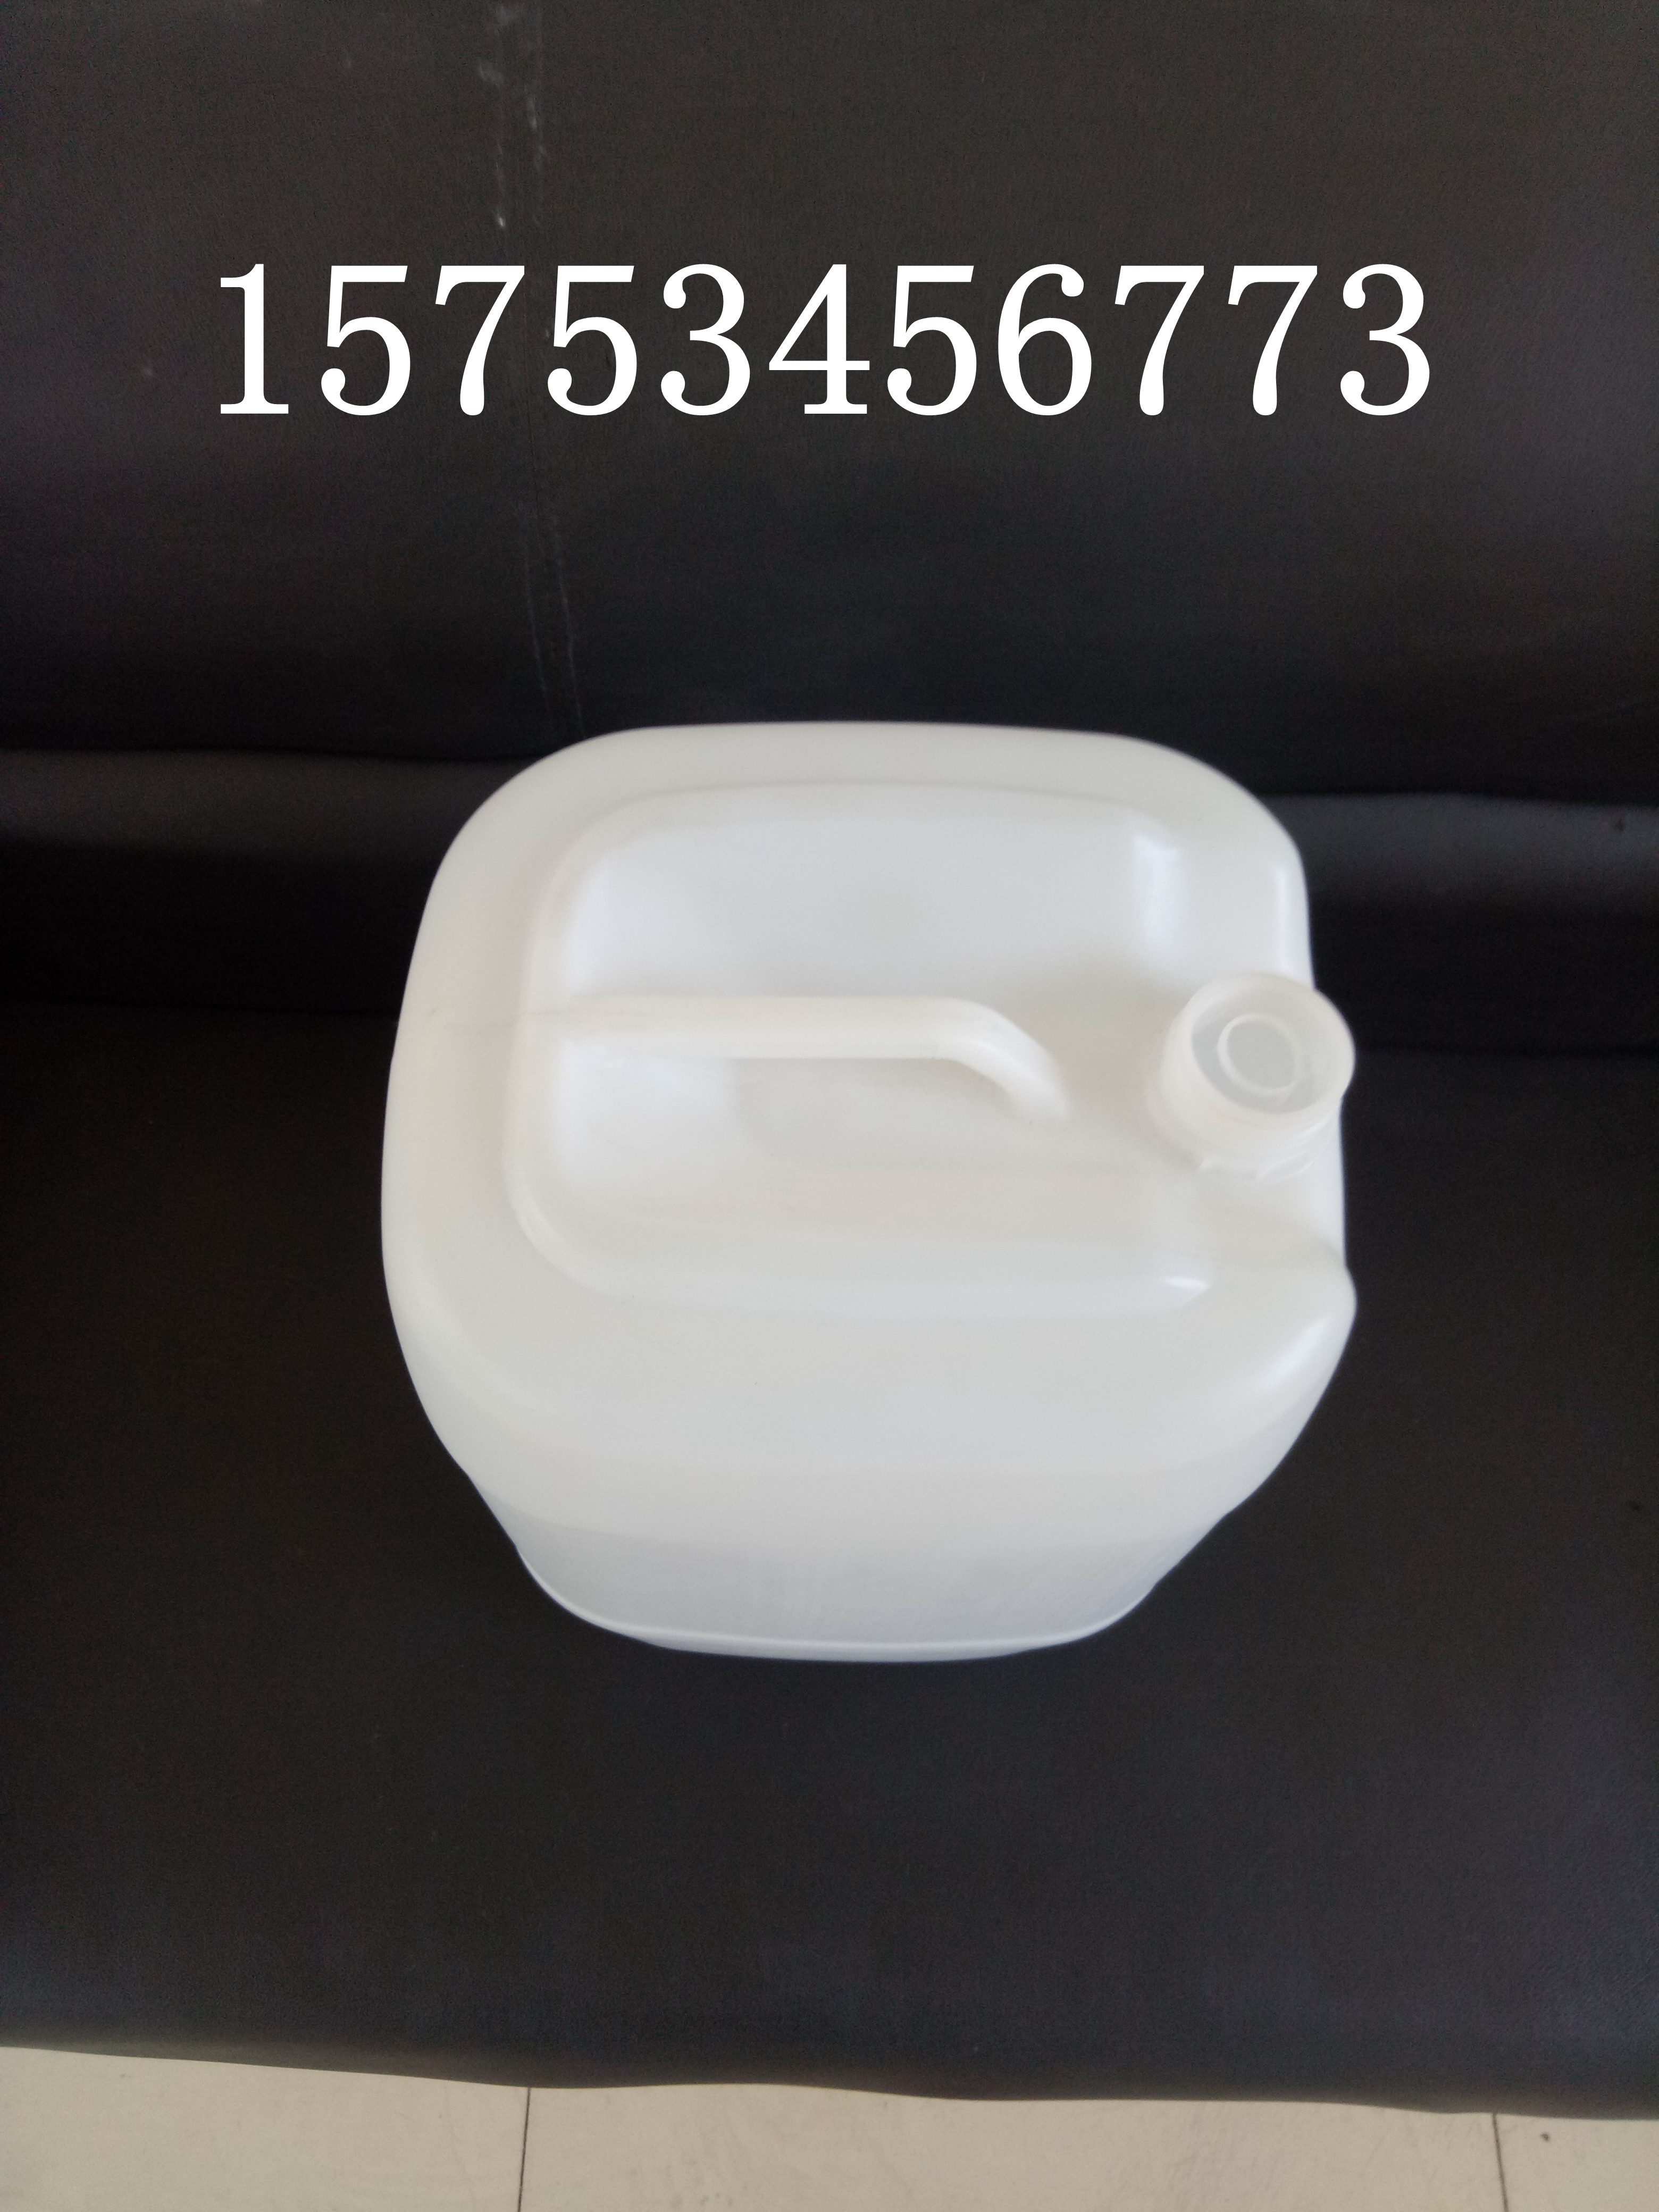 25L塑料桶 塑料桶生产厂家 化工桶 食品级塑料桶 塑料桶批发